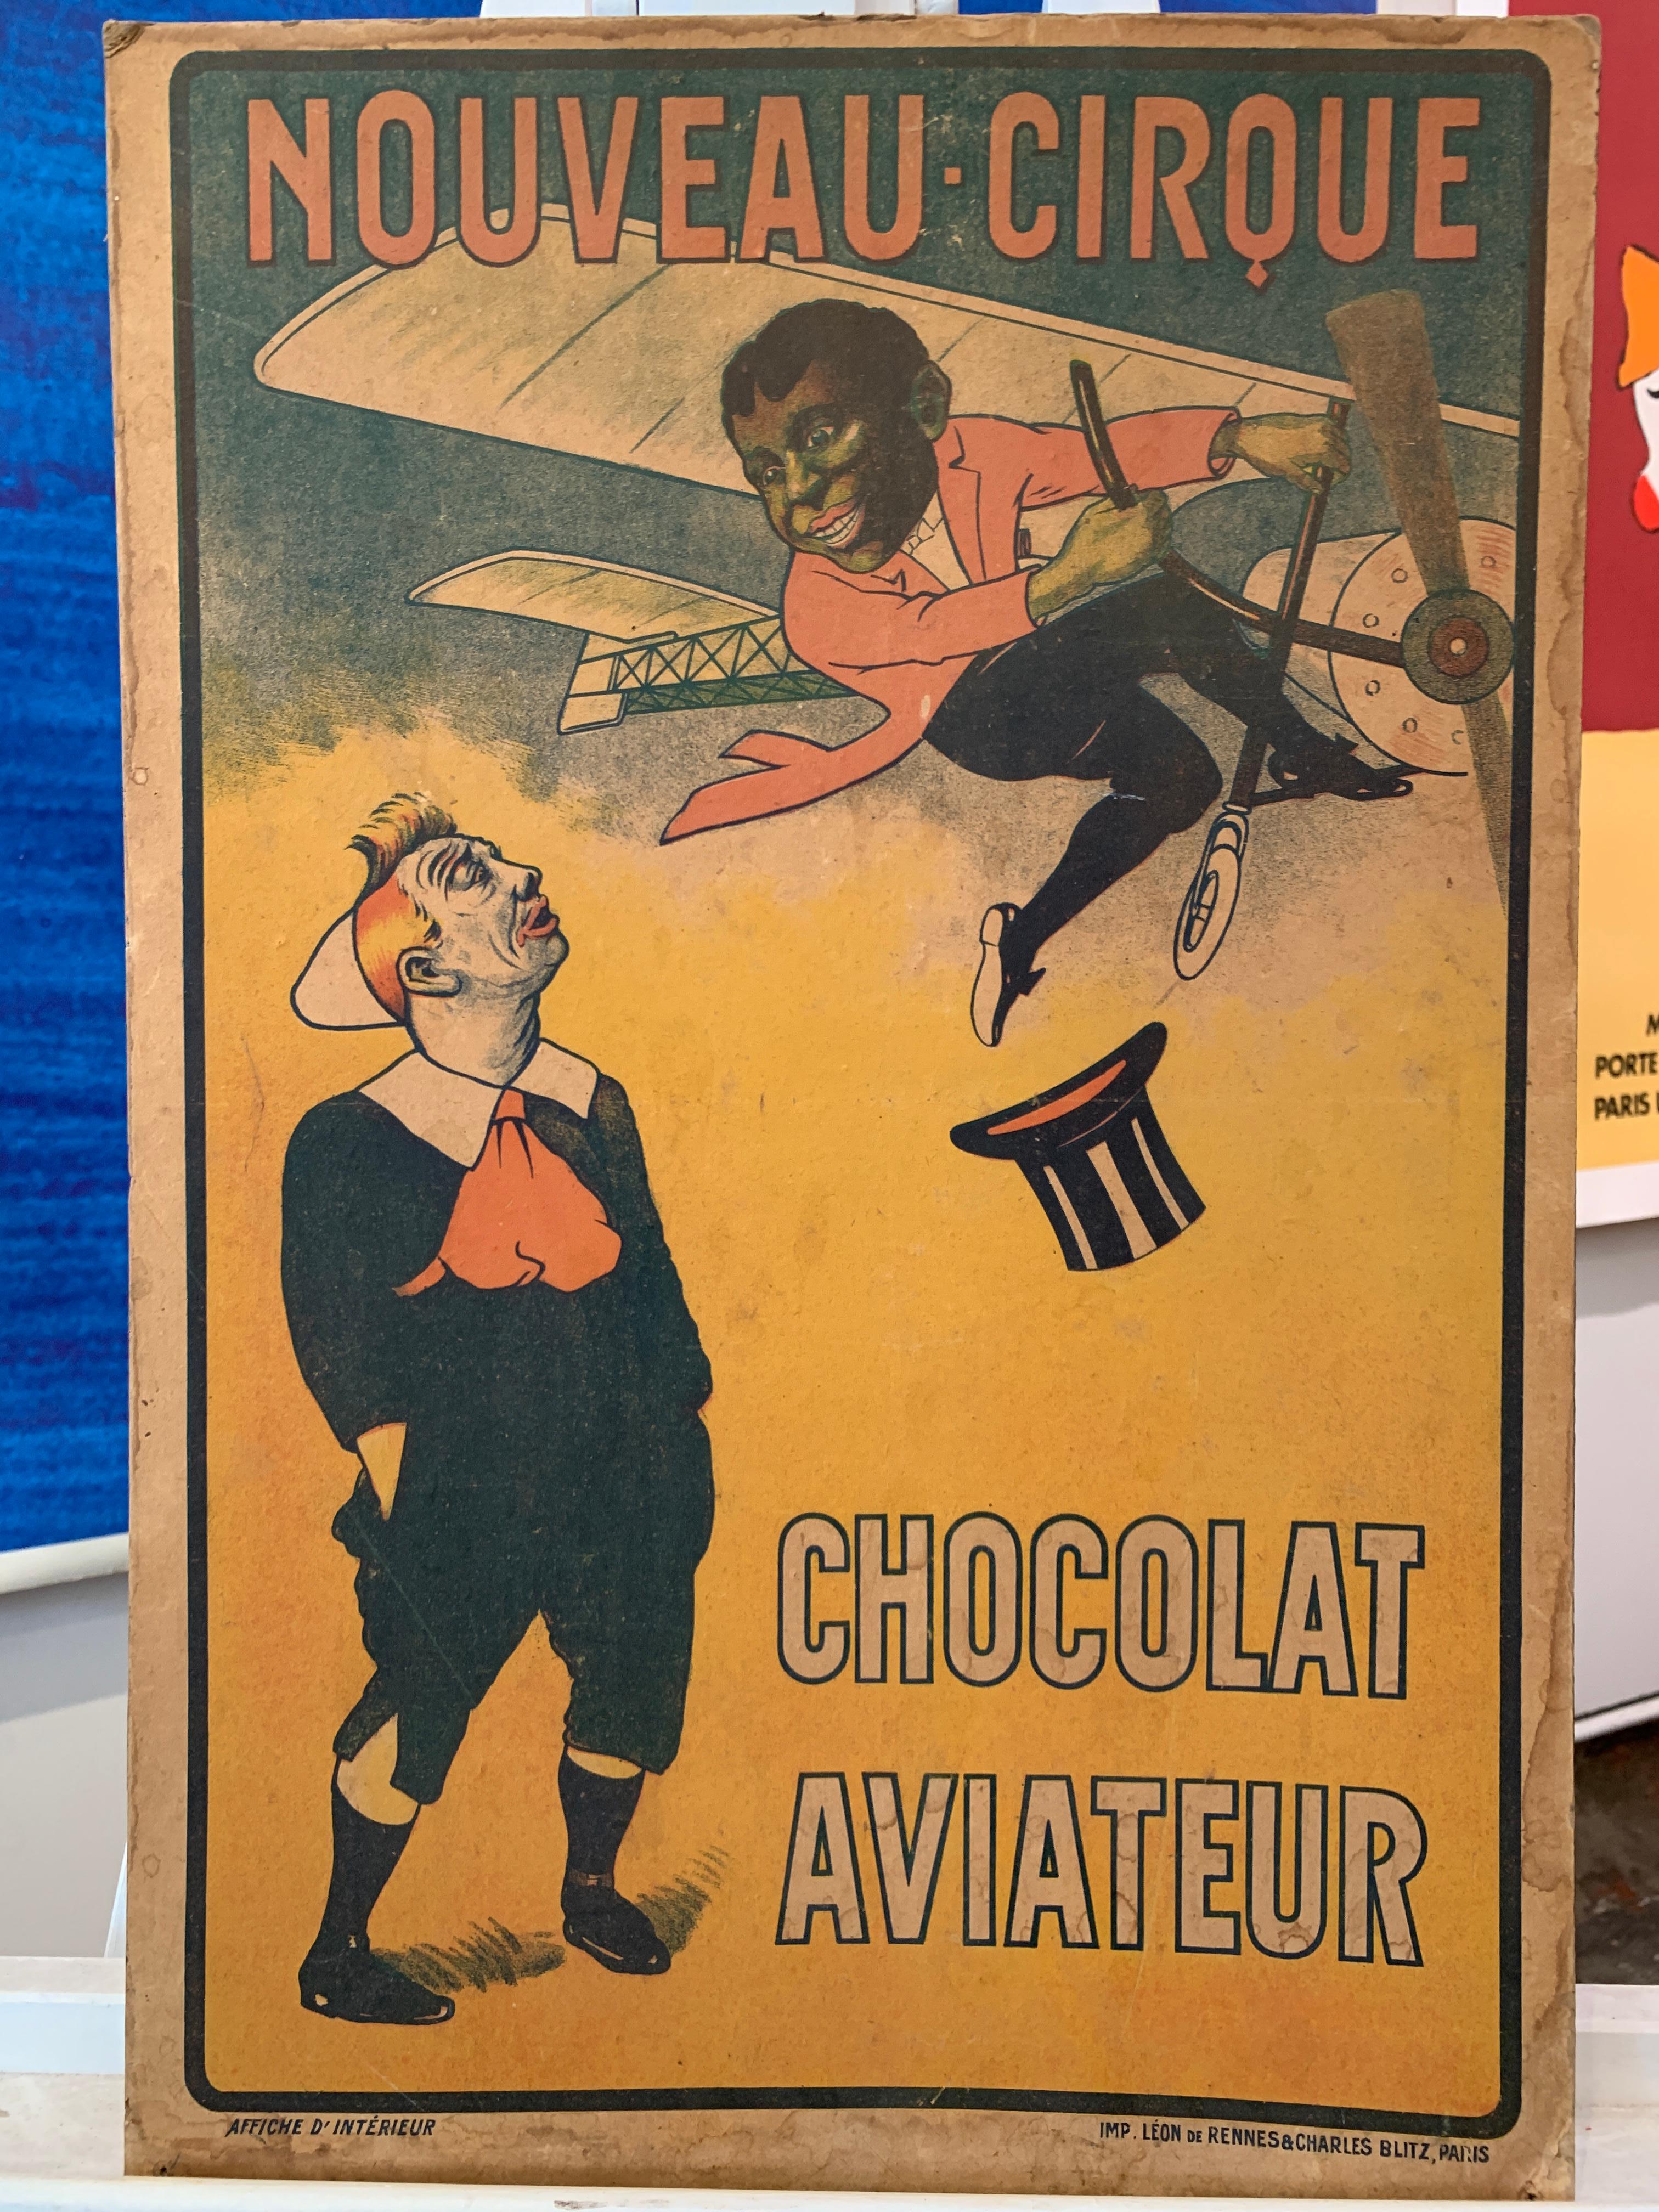 Foottit (souvent mal orthographié Footit) et Chocolat étaient un duo de cirque qui a fait ses débuts à la fin des années 1890 à Paris. Ce couple improbable a travaillé ensemble en tant que clowns professionnels dans le 